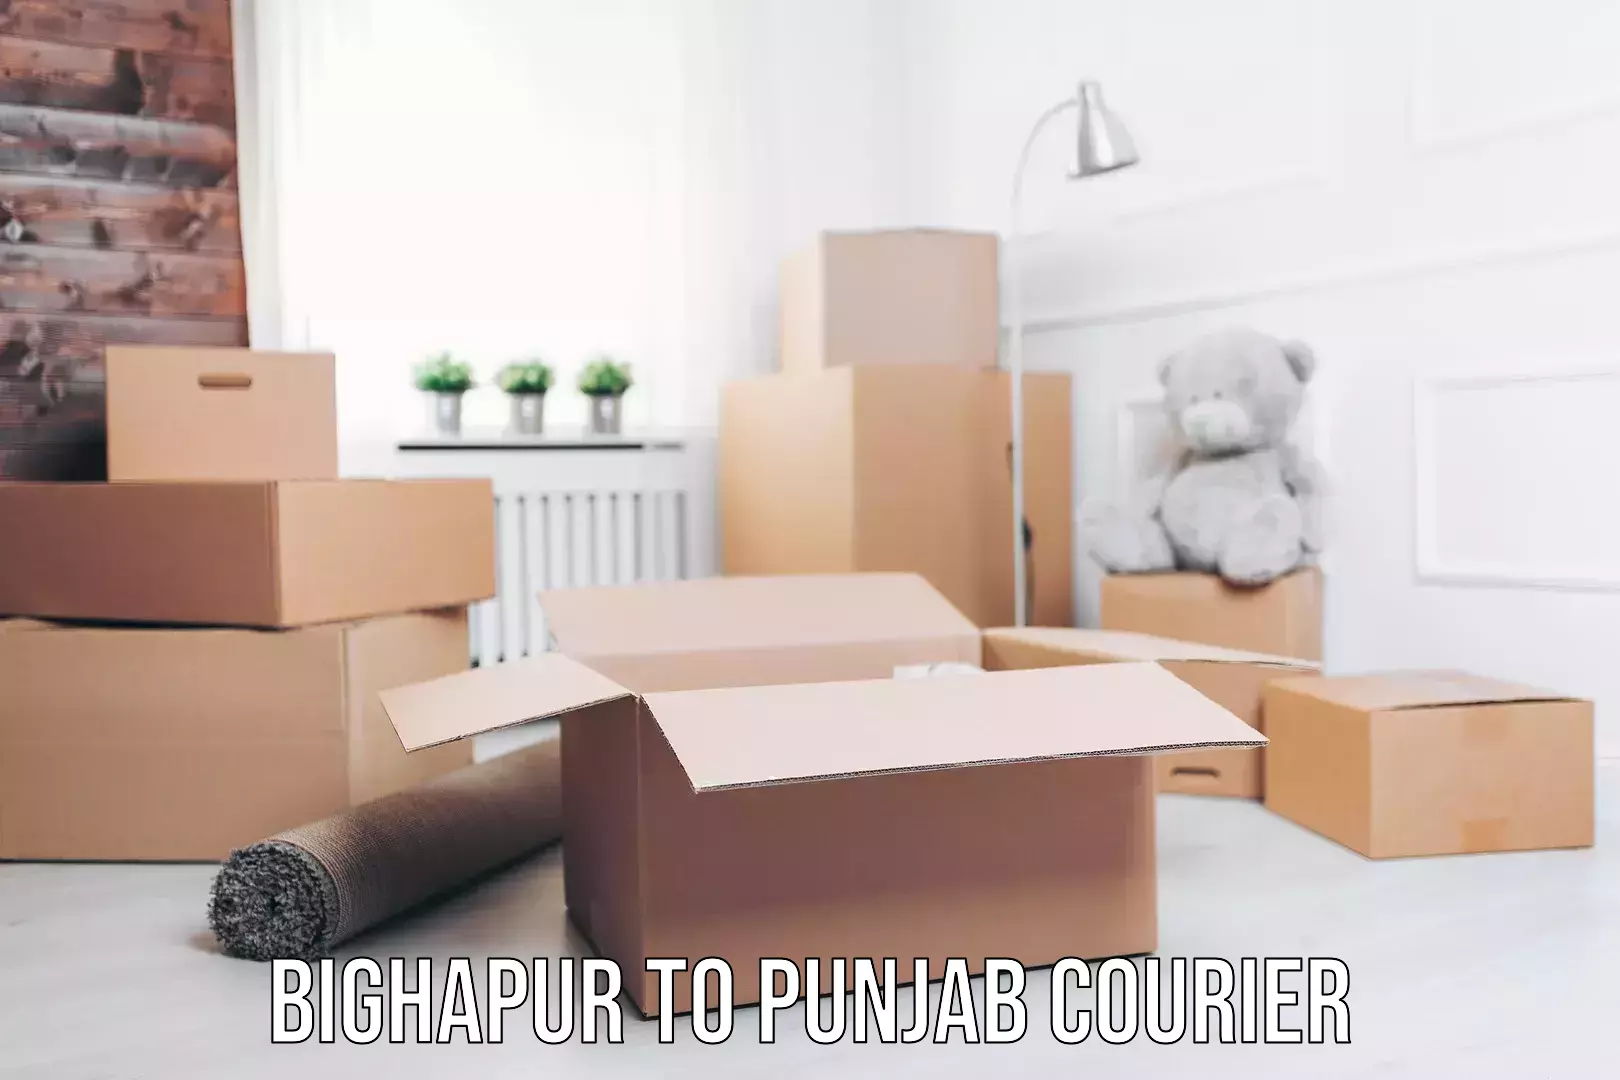 Expedited shipping methods Bighapur to Punjab